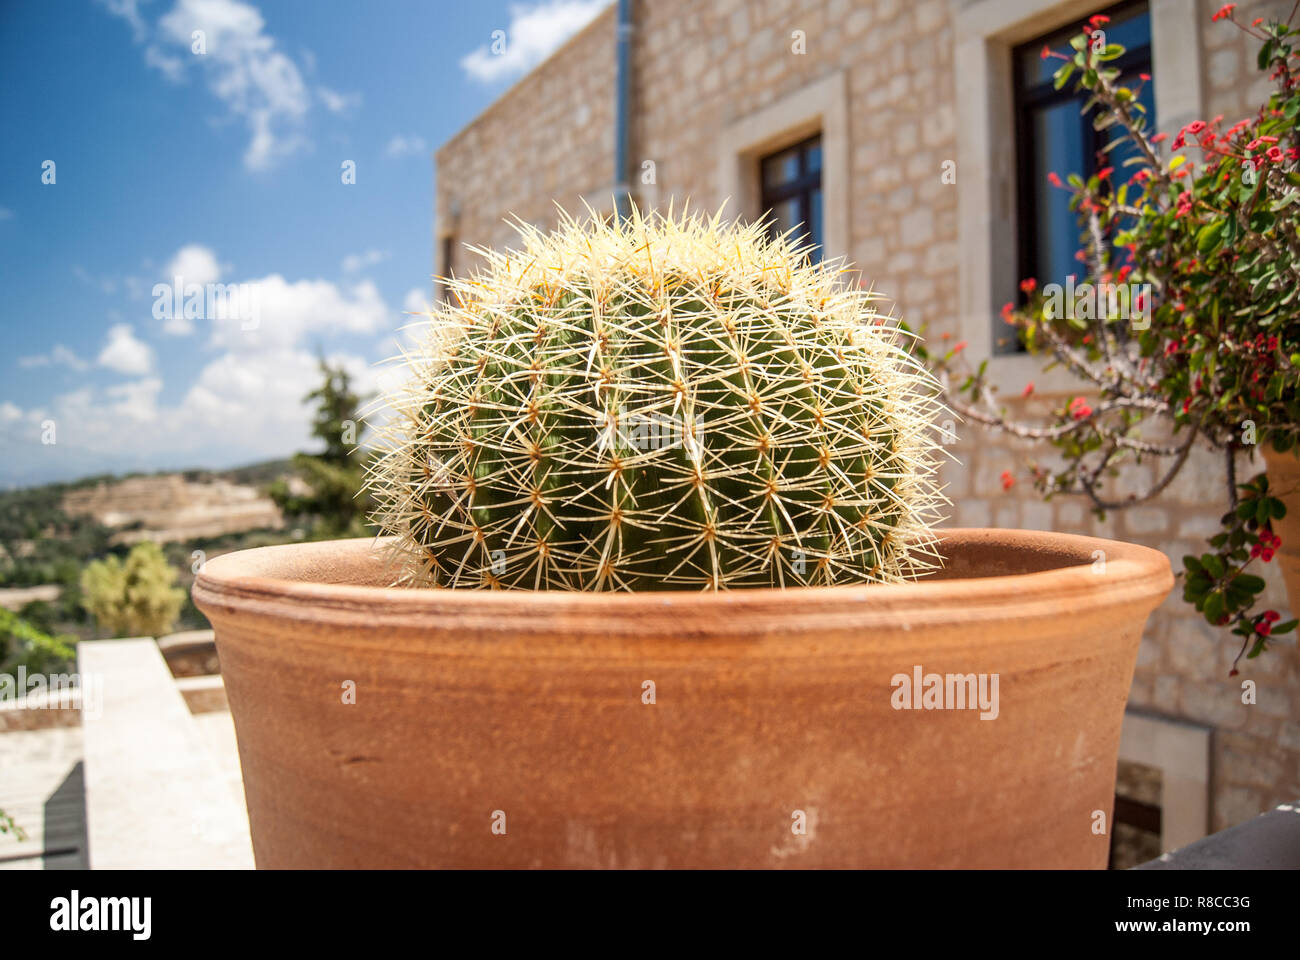 Cactus En Maceta De Barro En La Terraza En Verano Foto